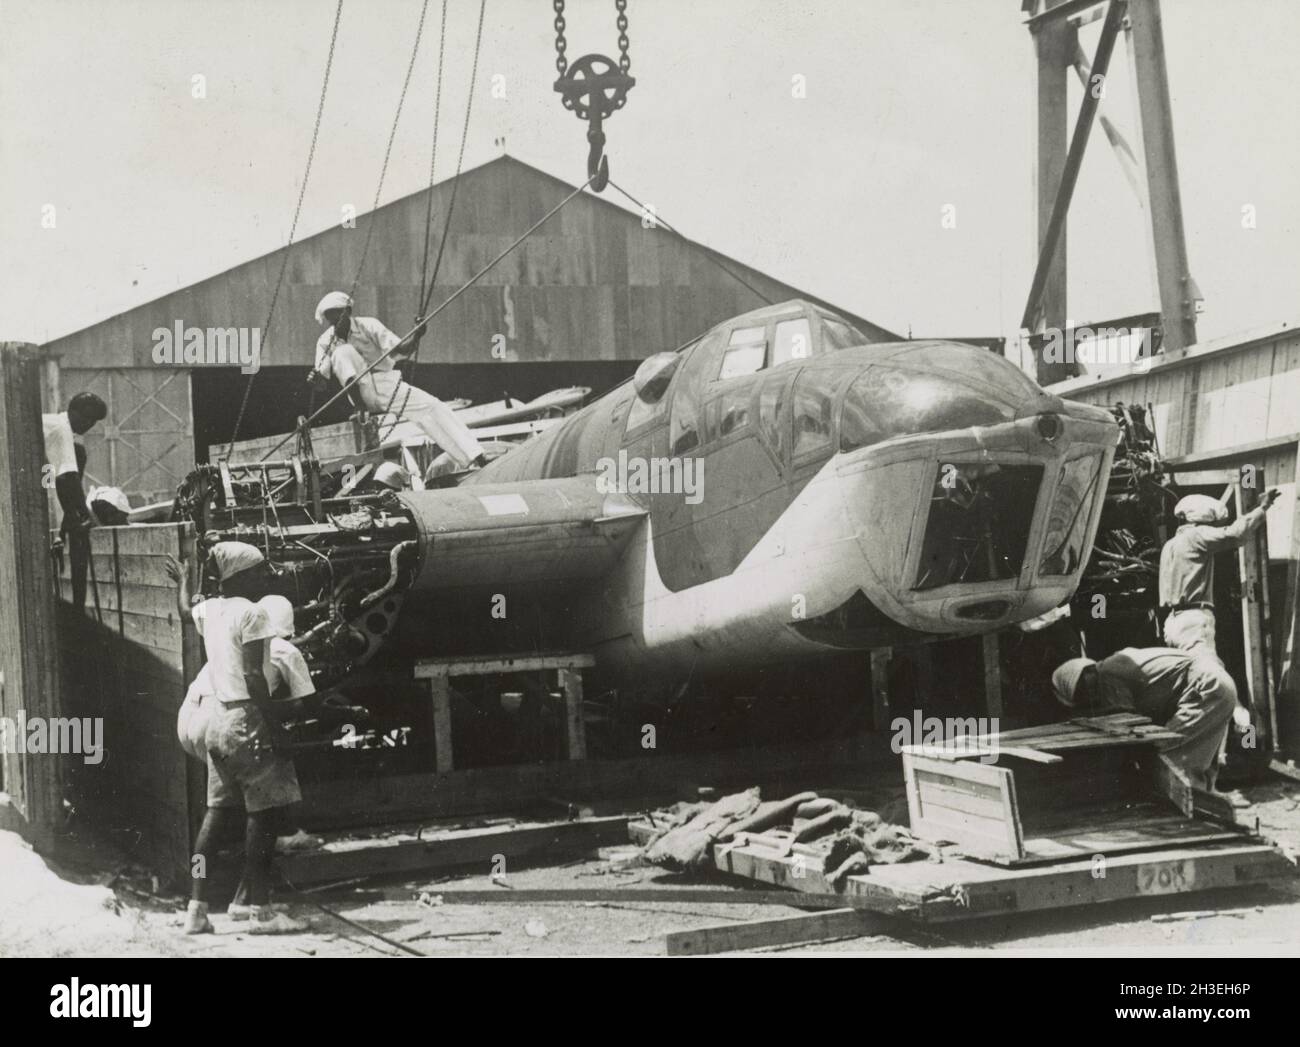 Photo vintage vers 1942 d'un bombardier léger Bristol Blenheim de la RAF déchargé d'une caisse avant l'invasion japonaise de Malaya et la chute de Singapour Banque D'Images